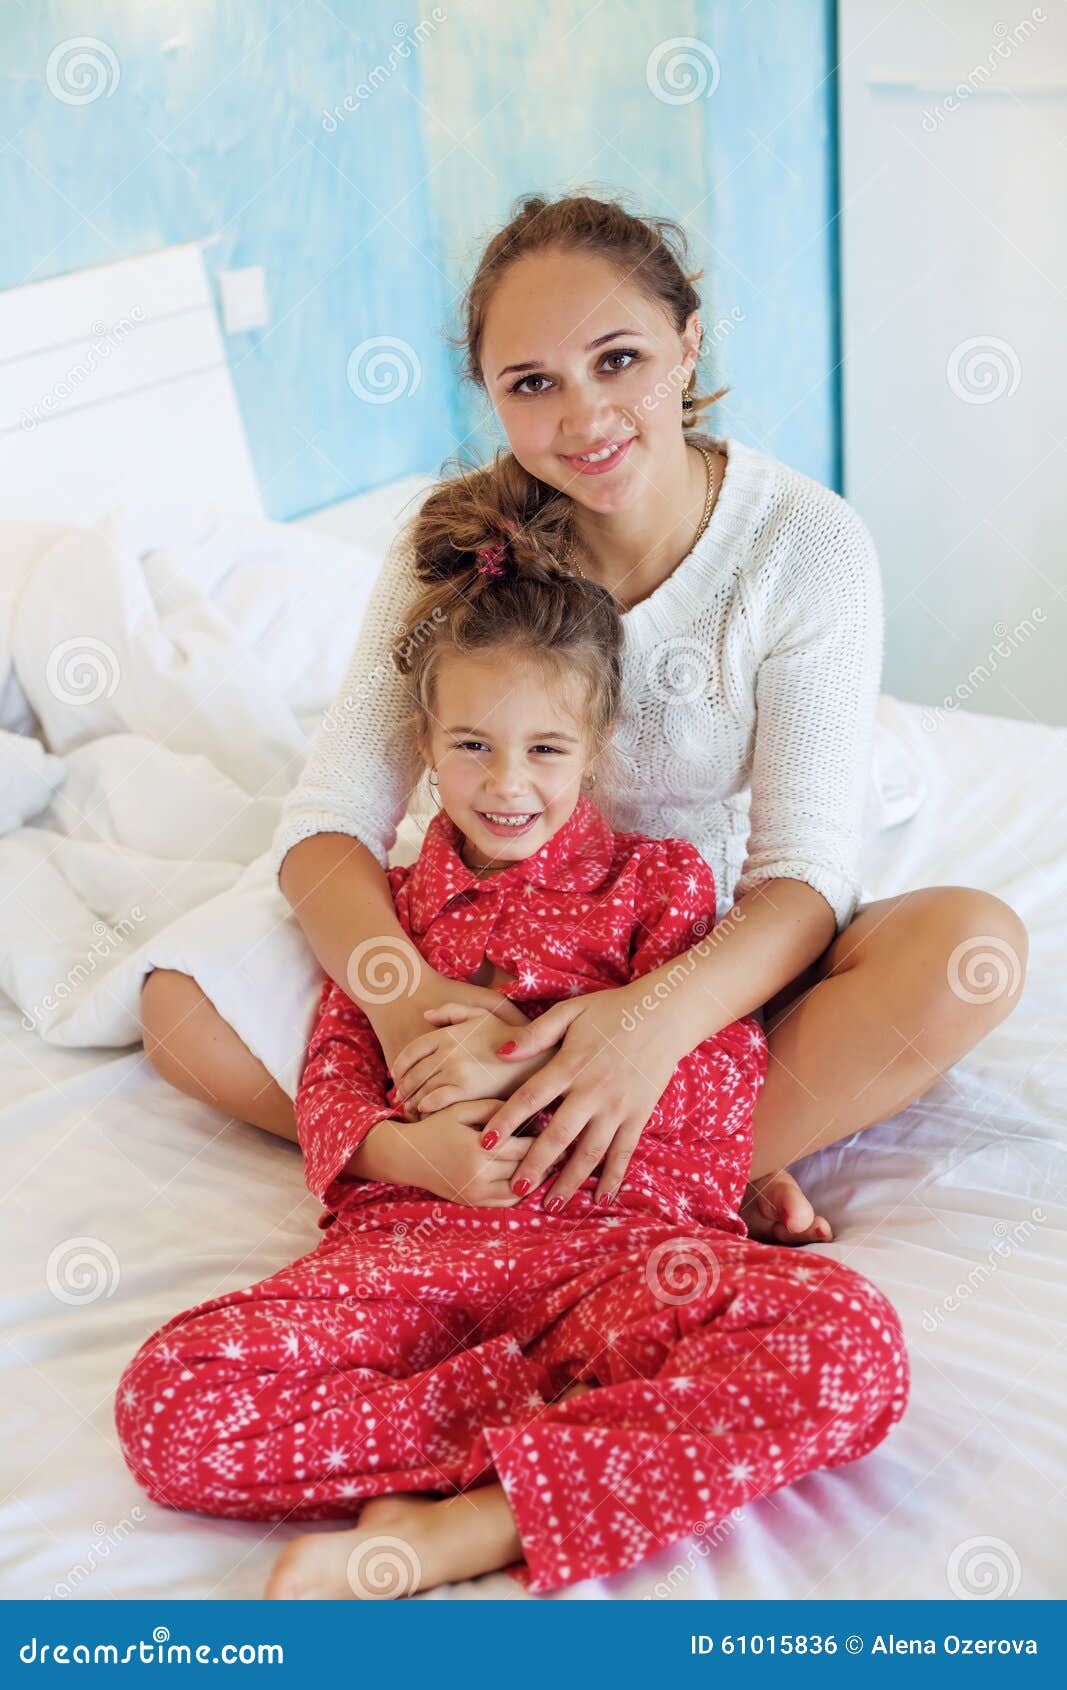 Мама с дочкой в постели. Мама с дочкой на кровати. Фото мама с дочкой в постели. Мама с дочкой фотосессия на кровати. Женщина с дочкой любительские фото.